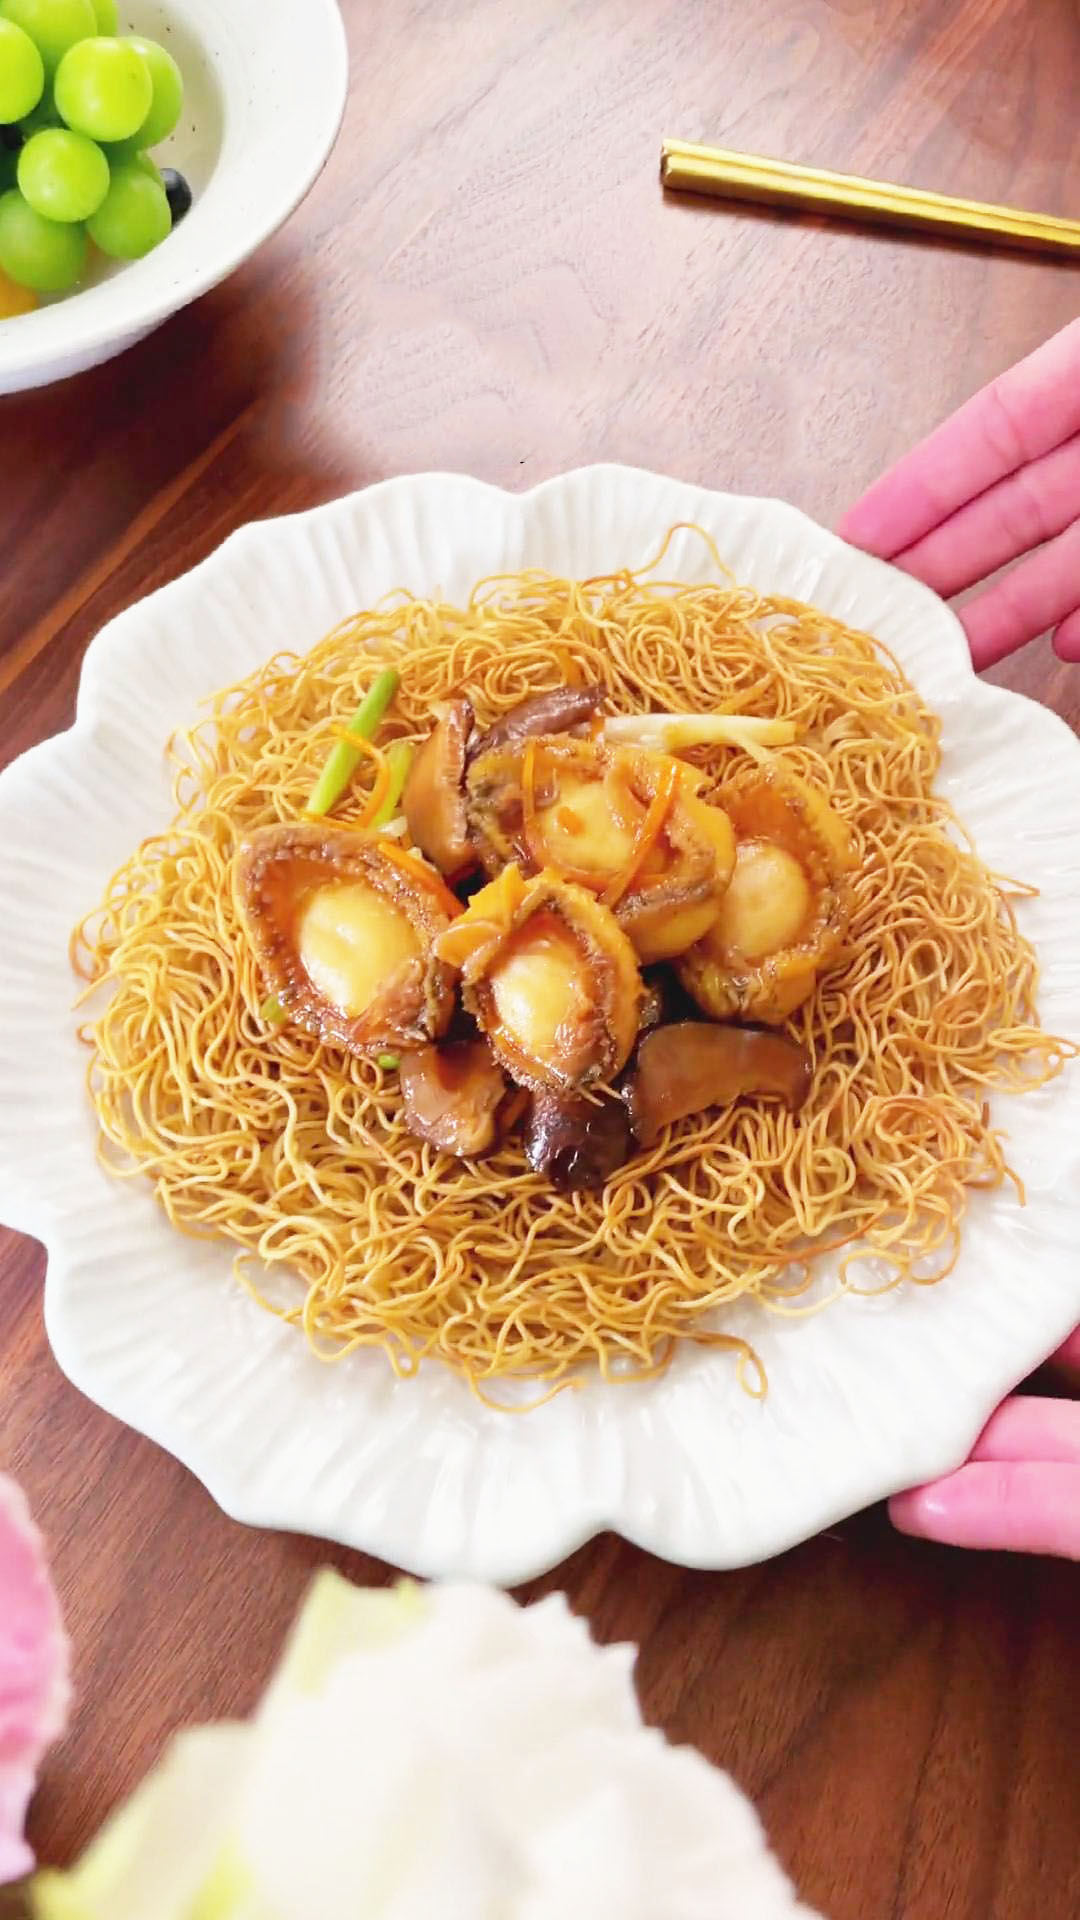 hong kong style pan fried noodles